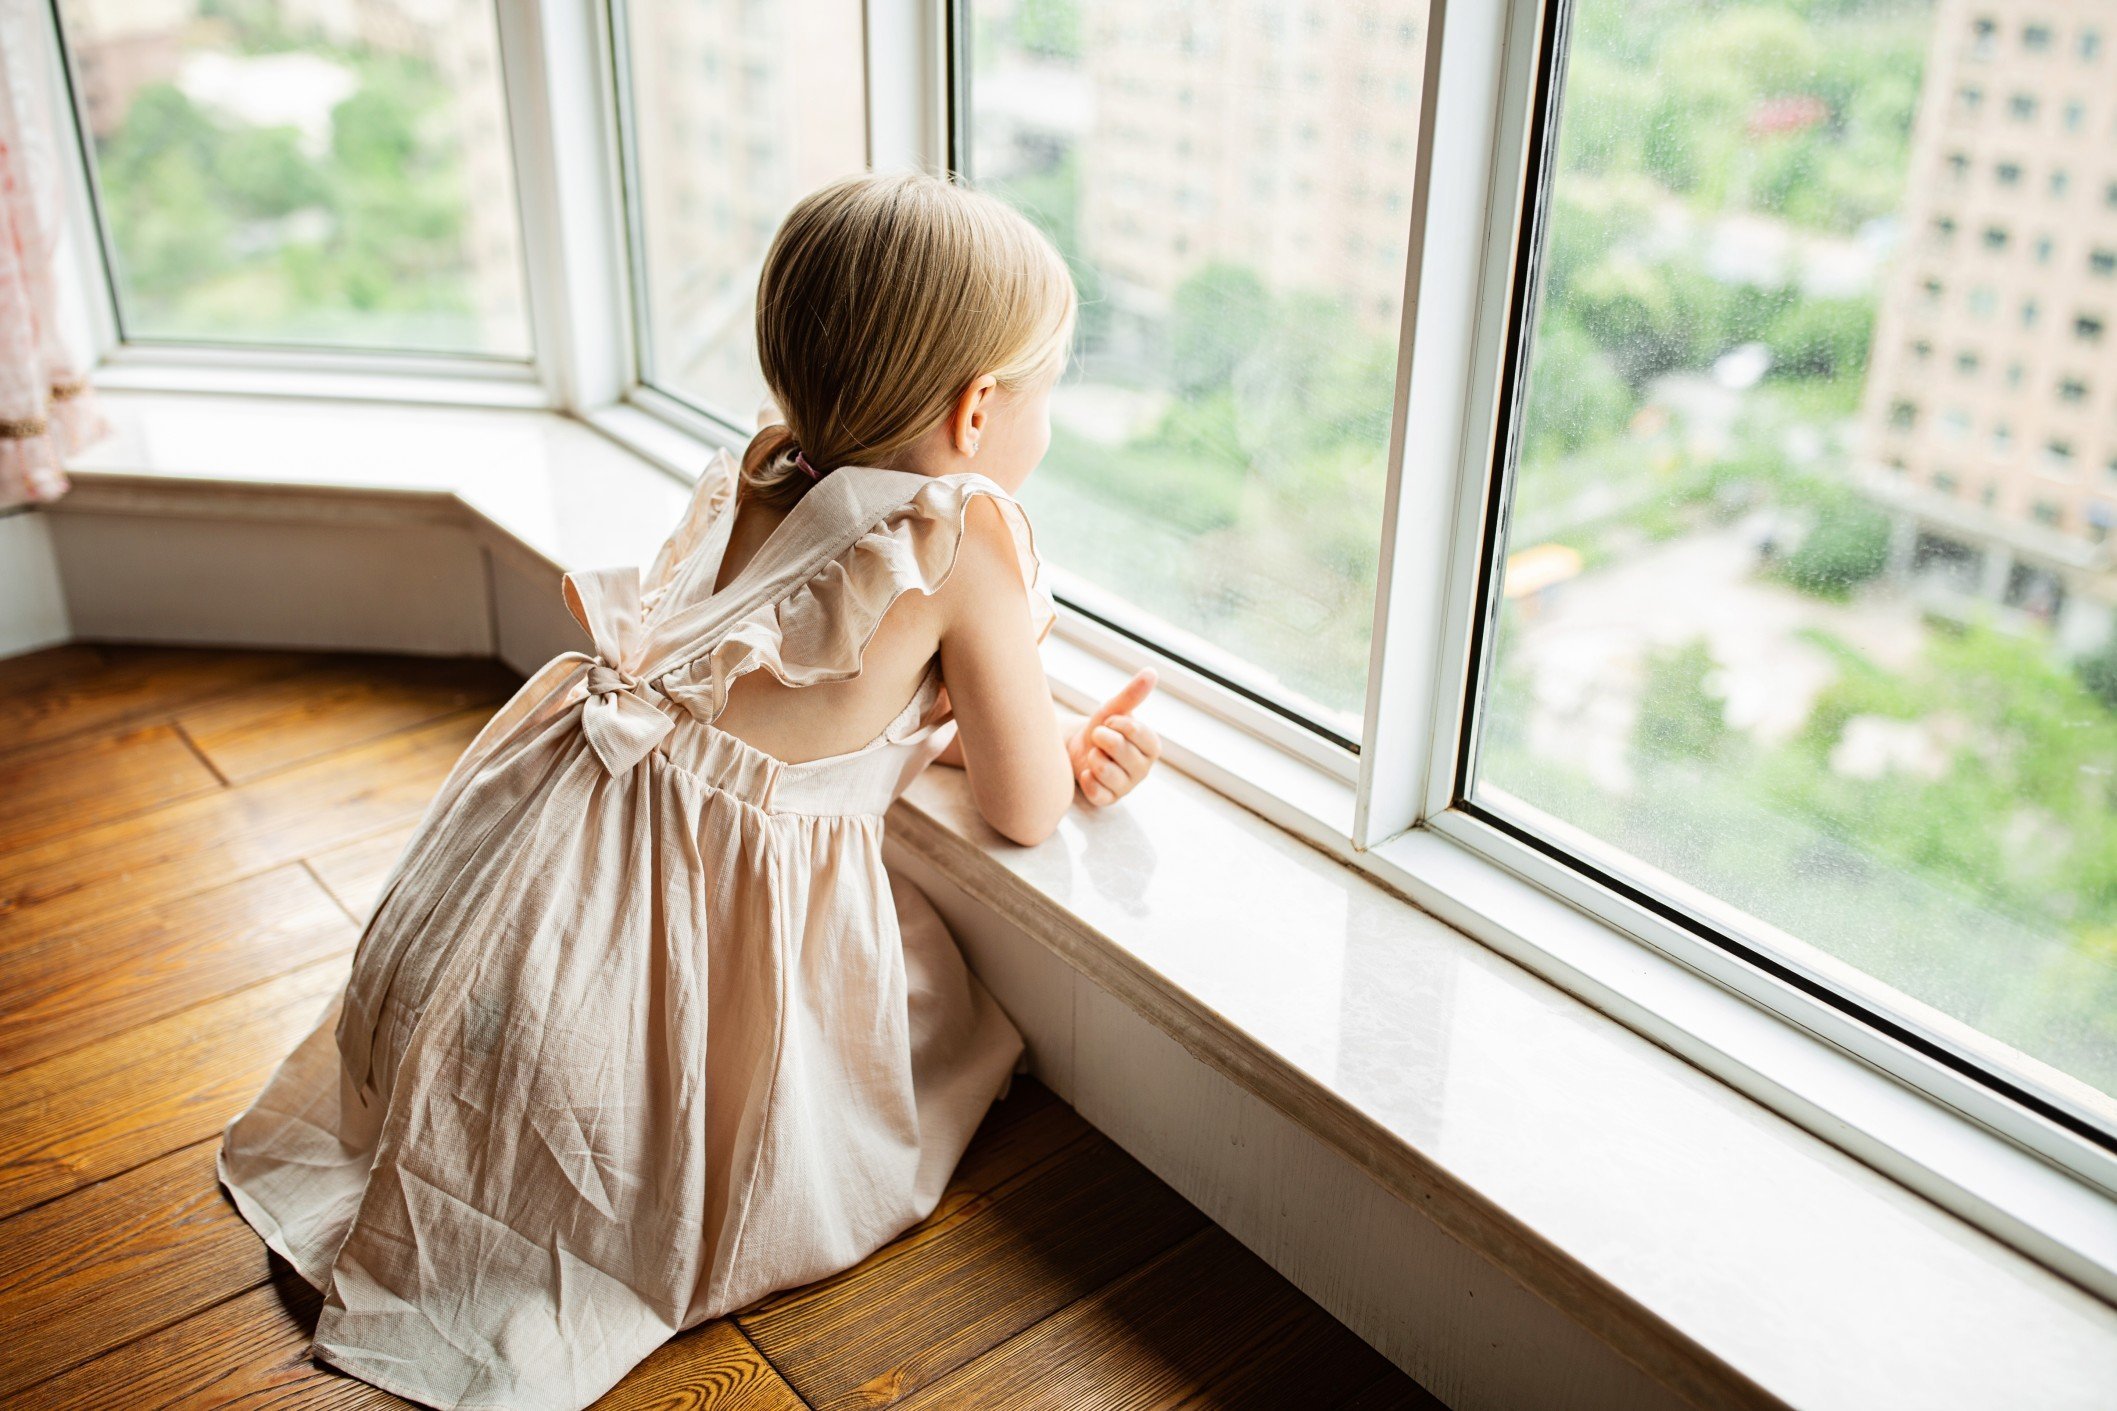 

В Ижевске 6-летняя девочка выпала из окна 7 этажа

